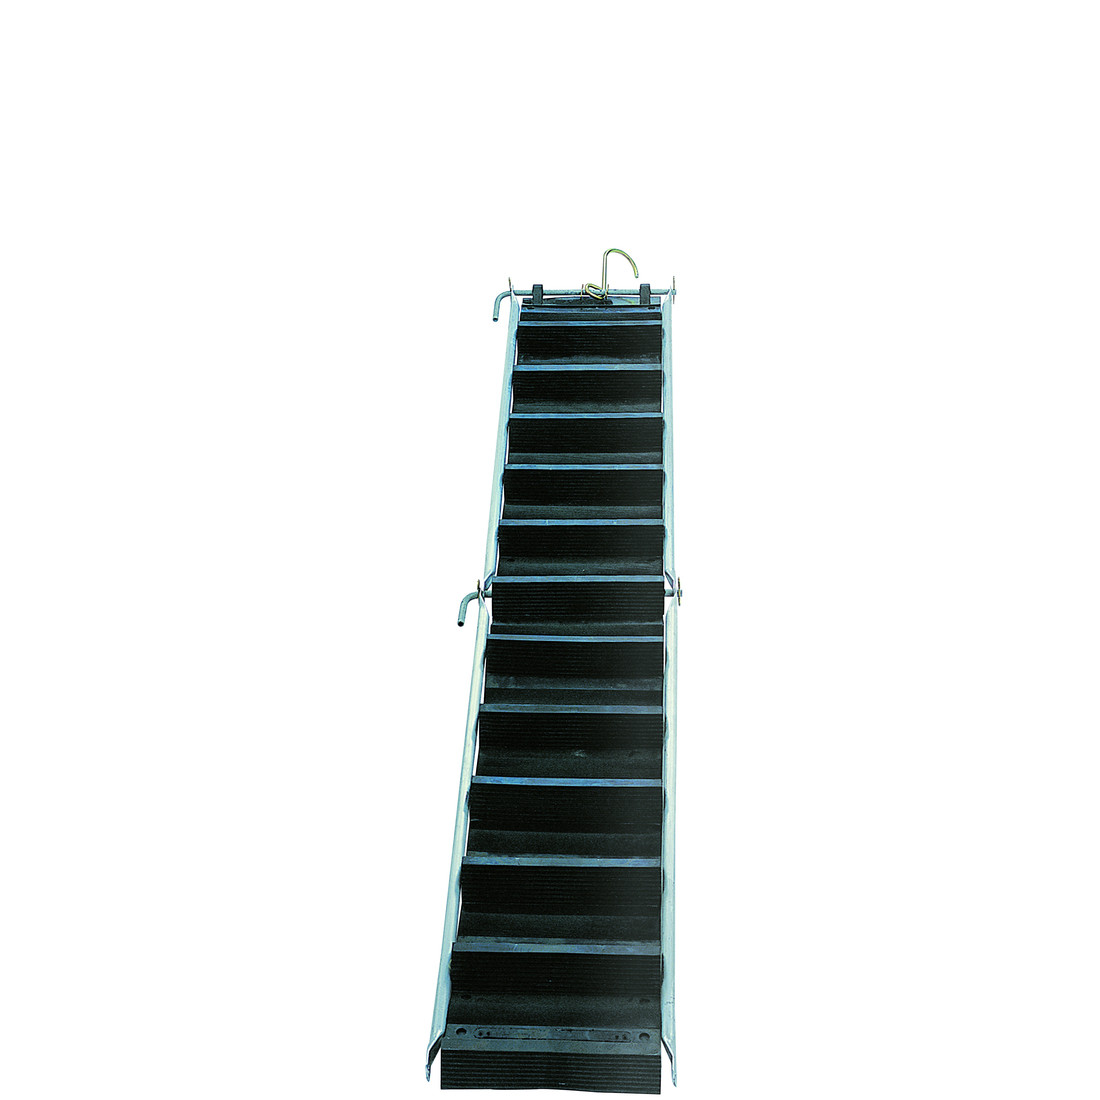 Soupléchelle rubber flexible ladder